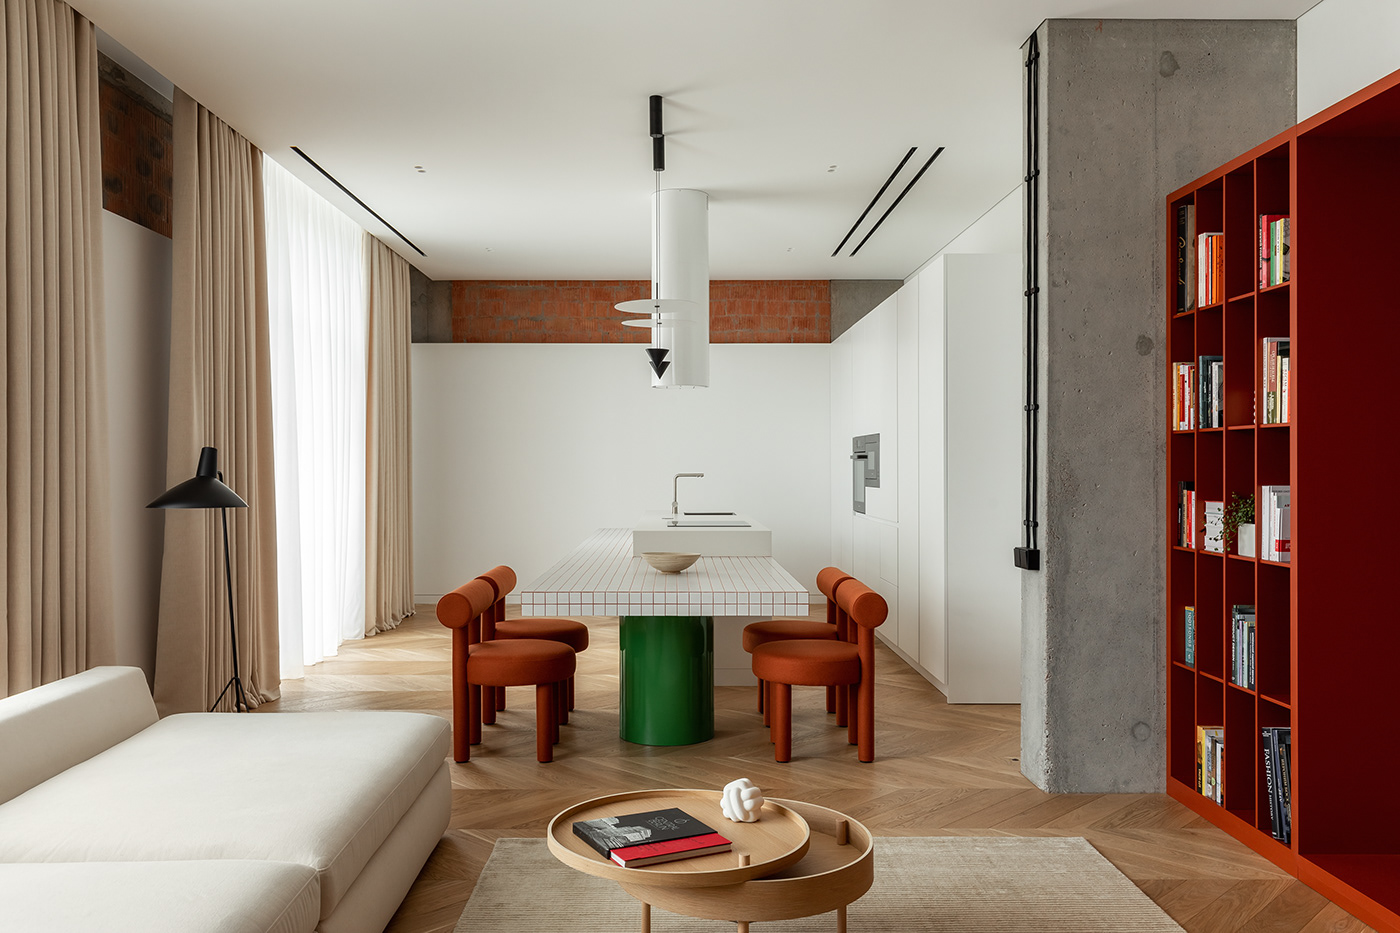 Minimalism interior design  Interior modern architecture design apartment interiordesign onemoreburo